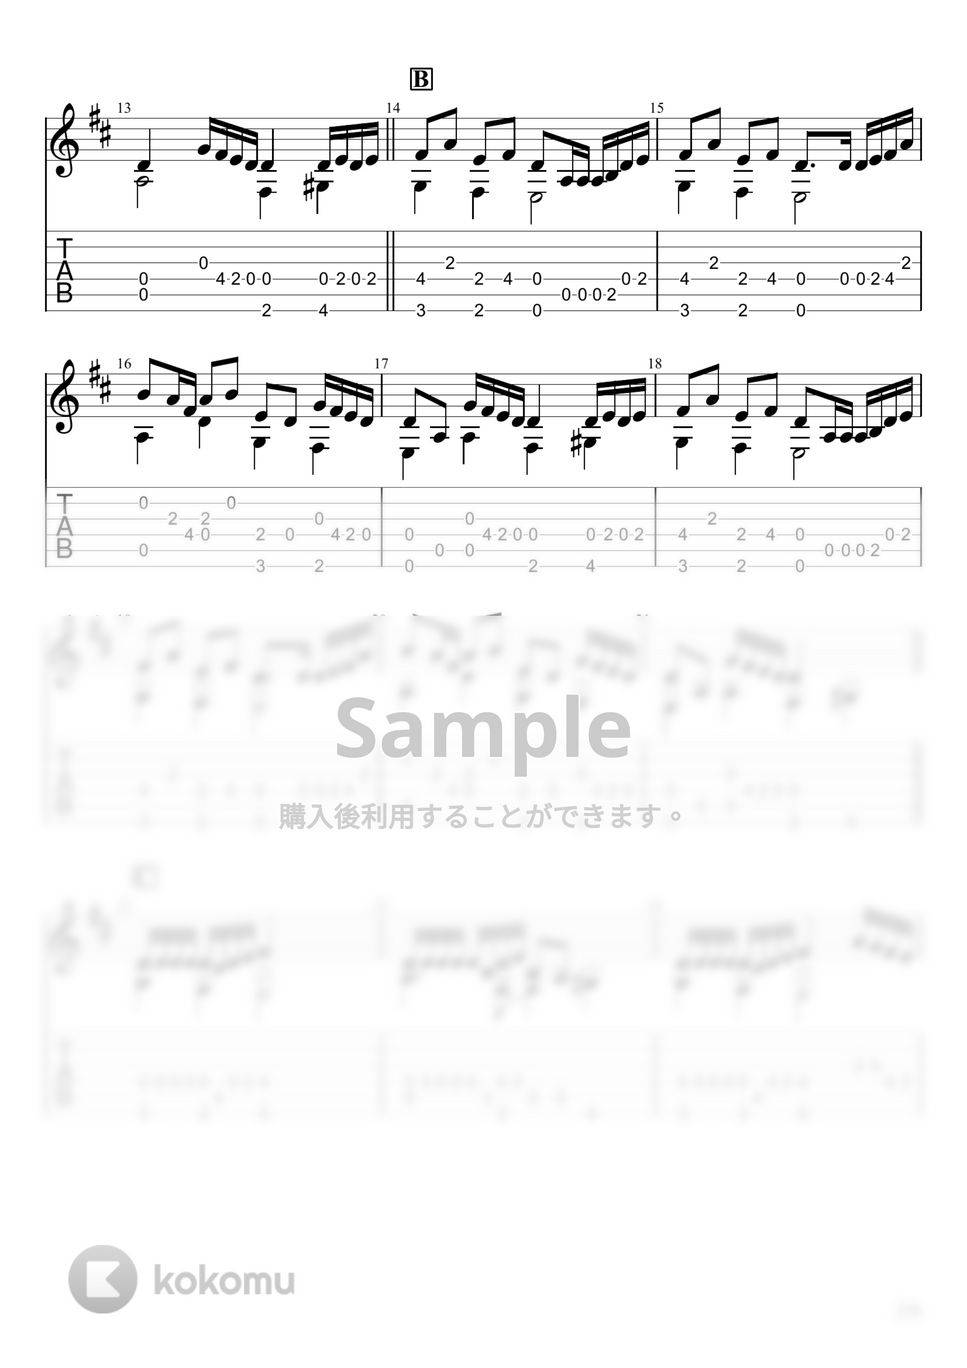 藤井風 - ガーデン (ソロギター) by u3danchou